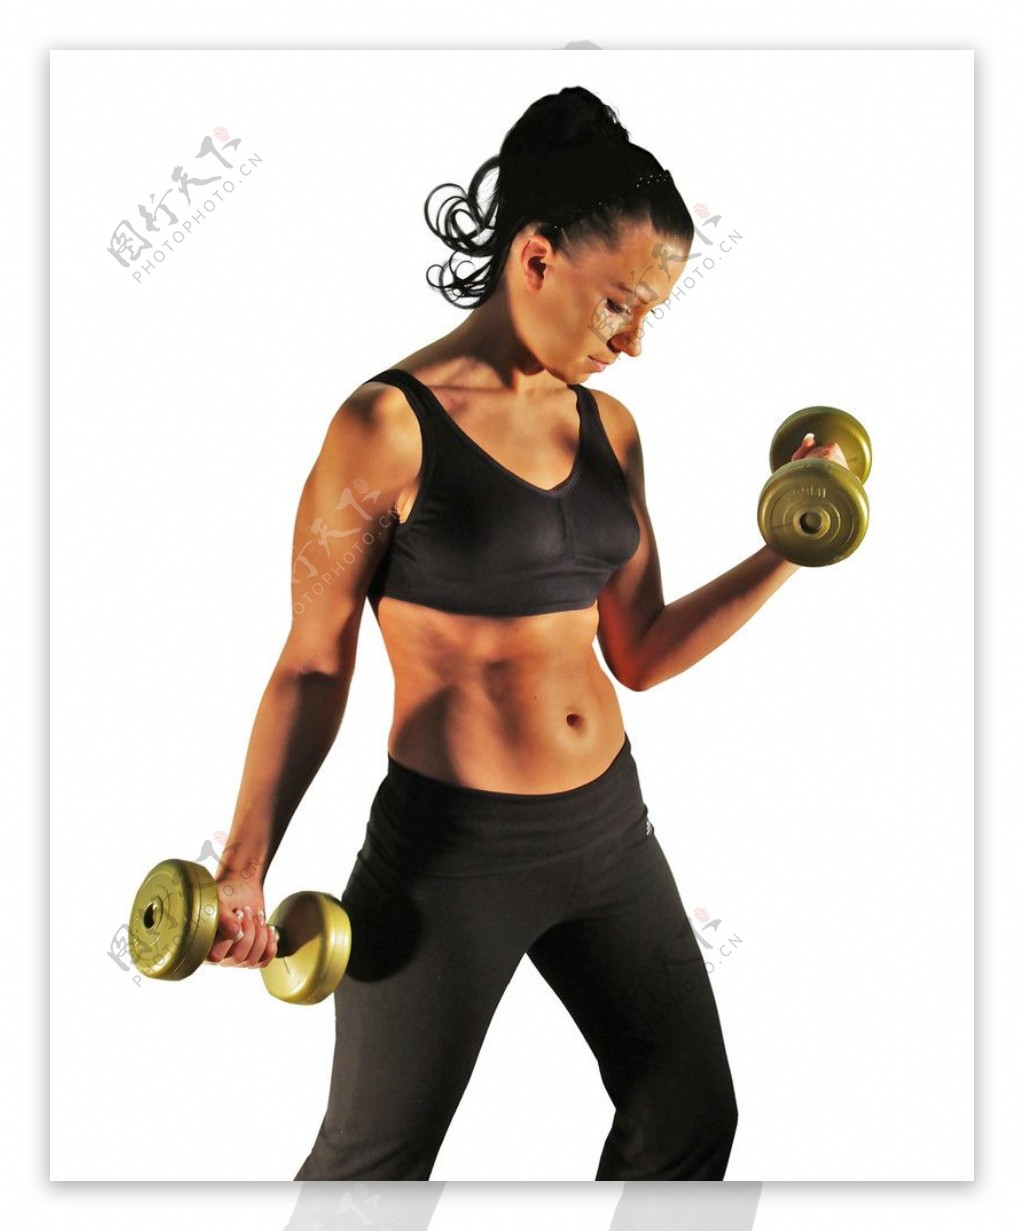 健身教练训练胖女人 库存图片. 图片 包括有 肥胖病, 活动家, 健身, 刺激, 锻炼, 体操, 范围 - 157675399